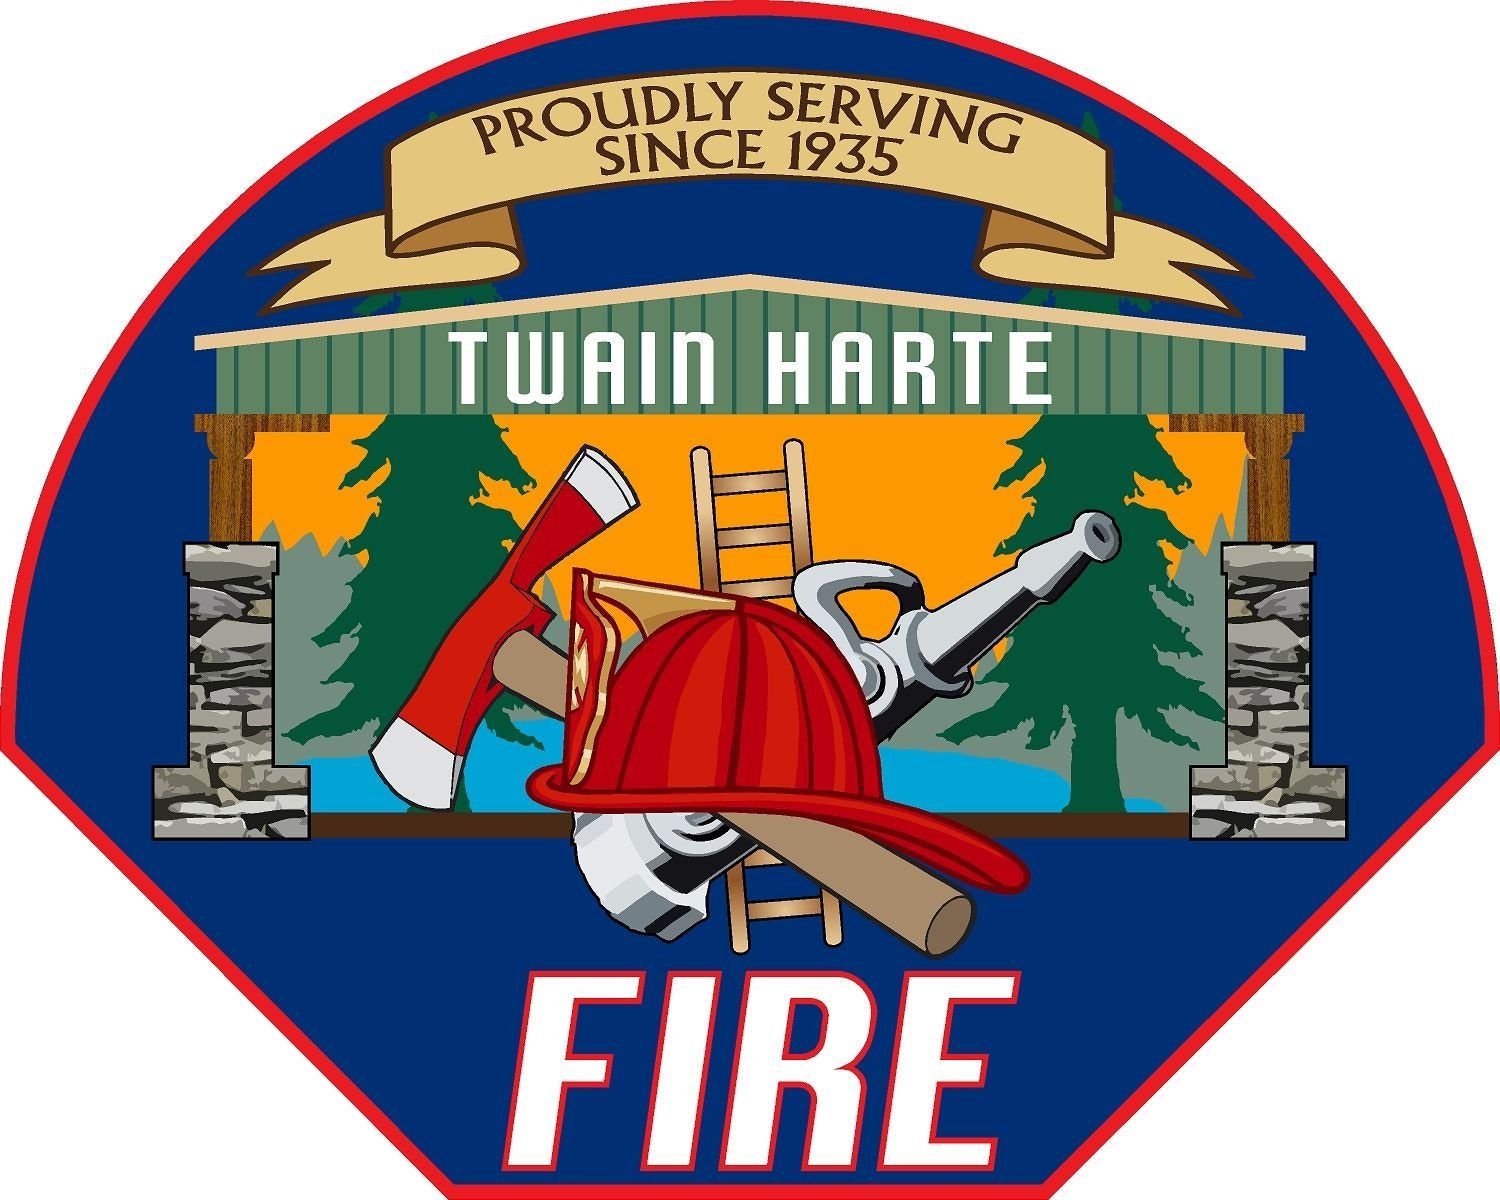 Twain Harte Fire Department .jpeg